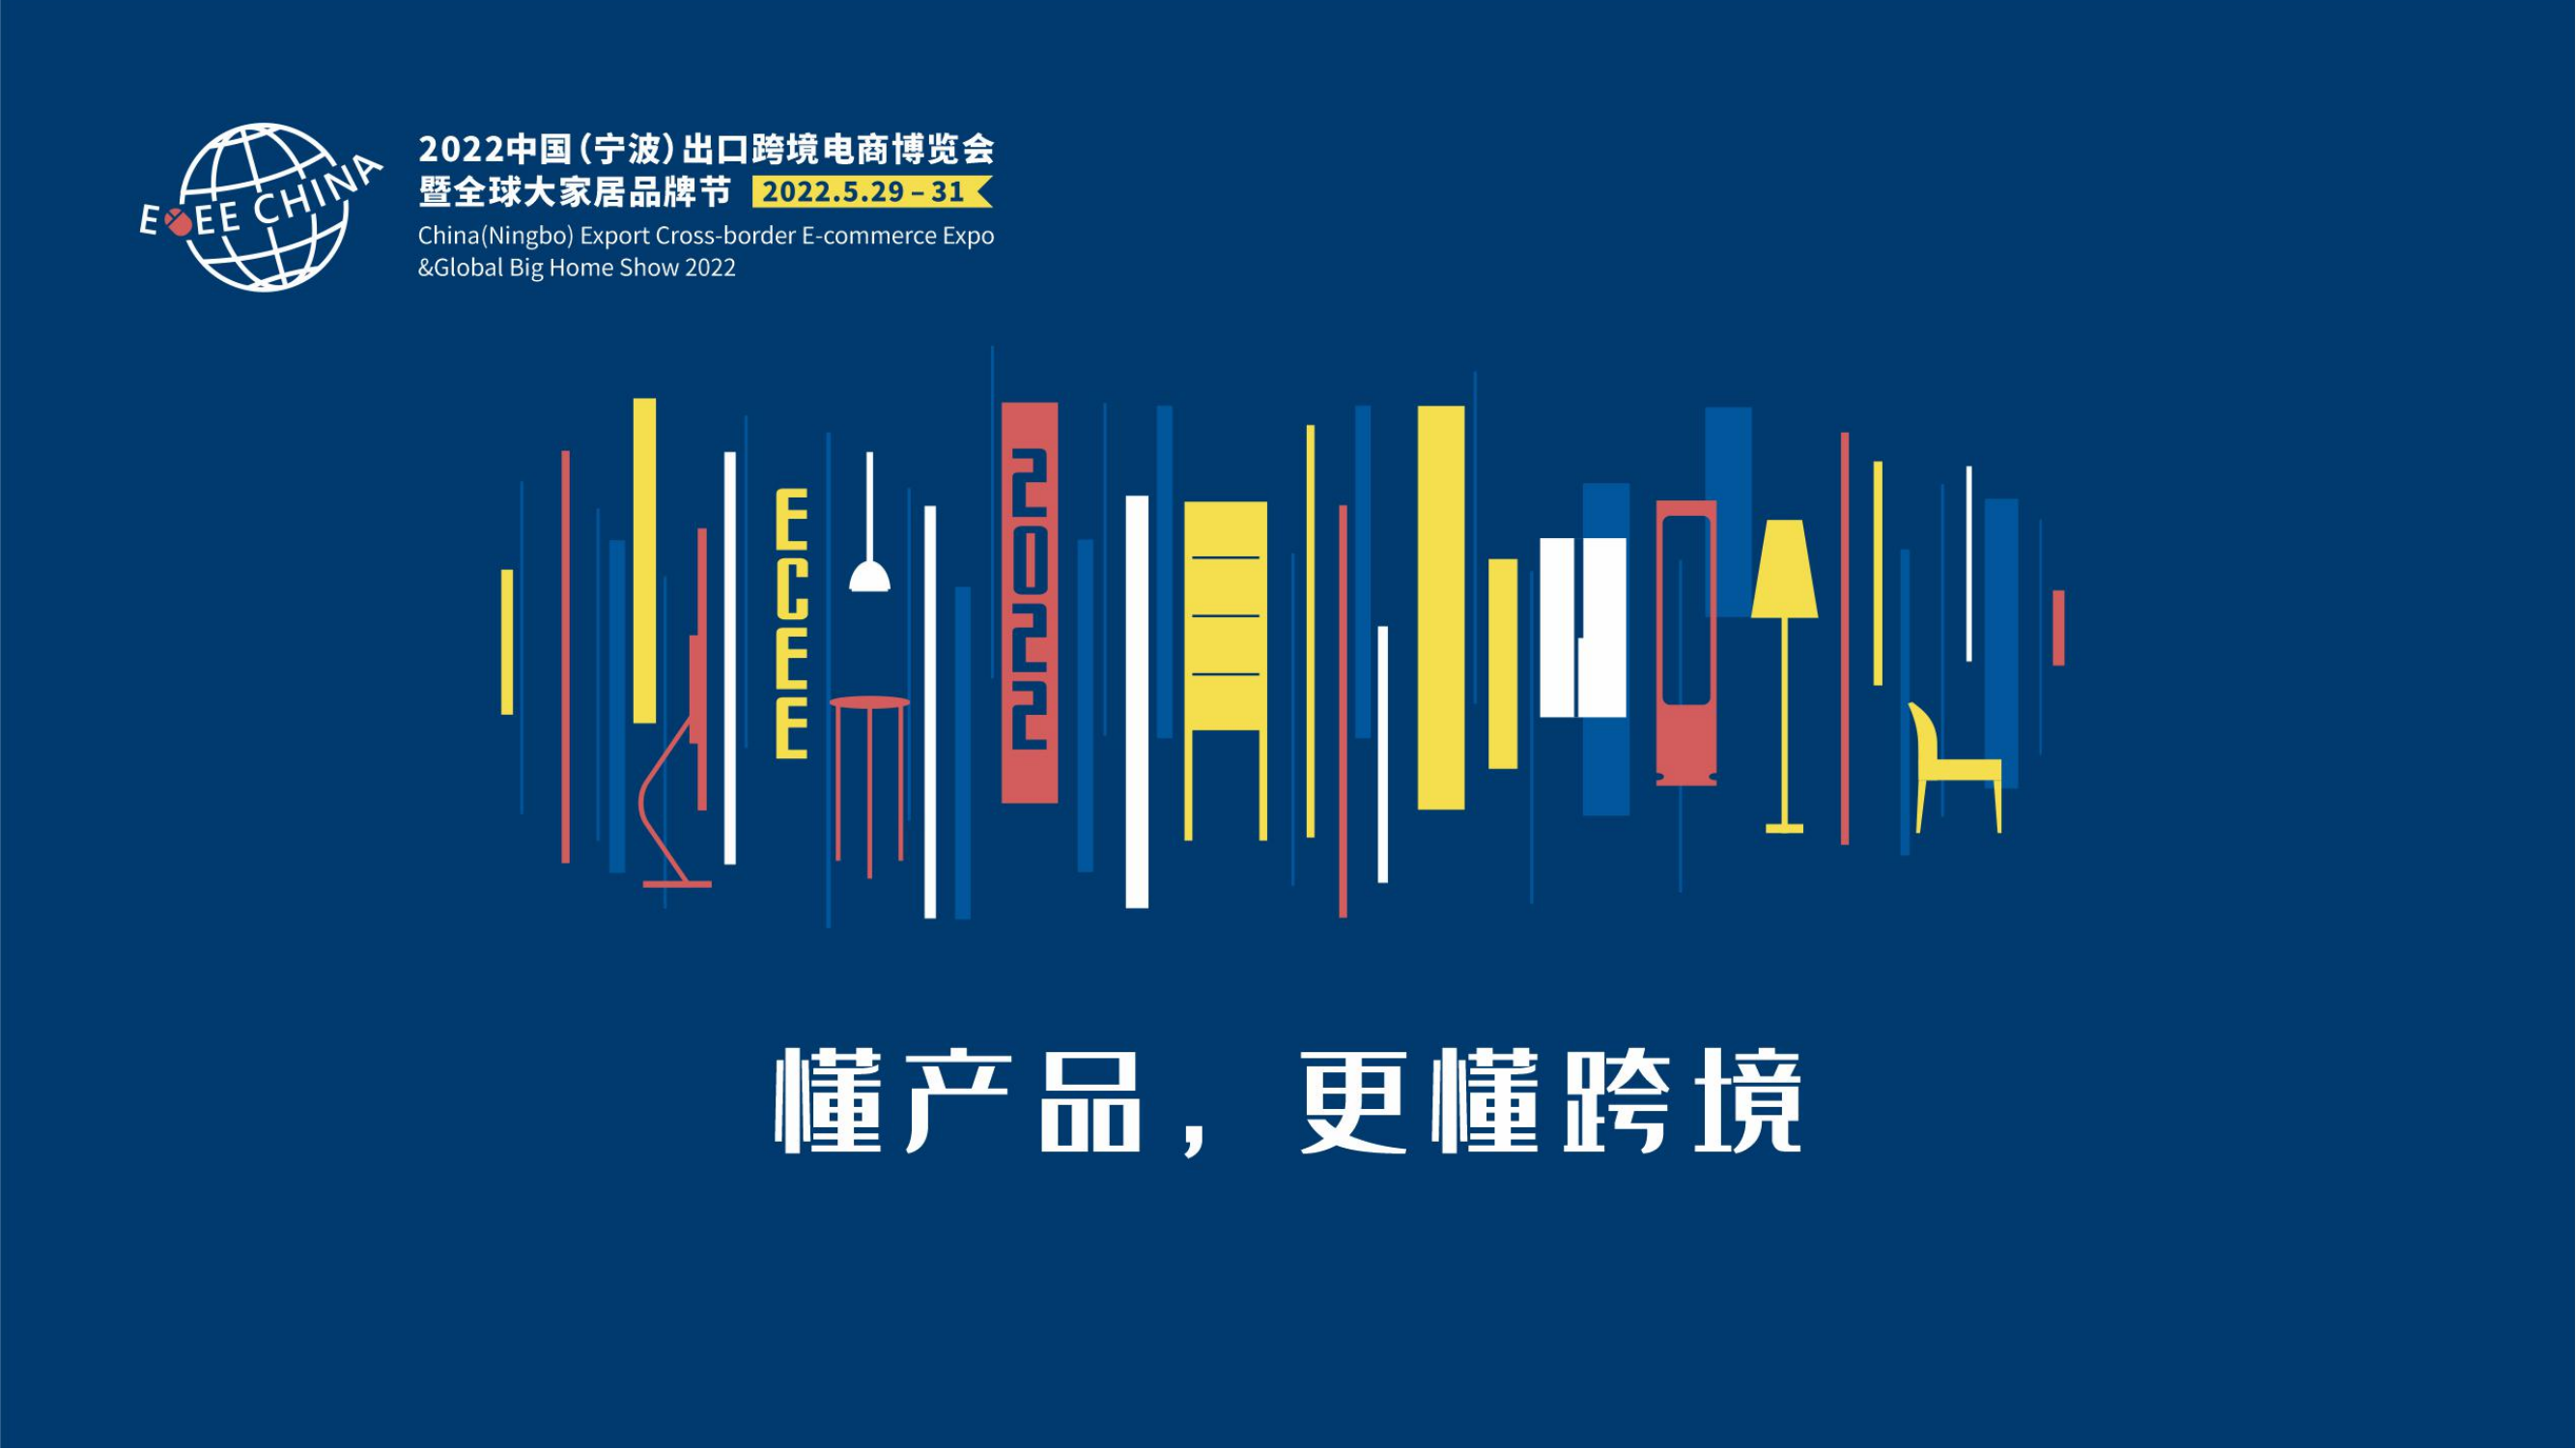 2022年中国宁波出口跨境电商博览会暨**大家居品牌节